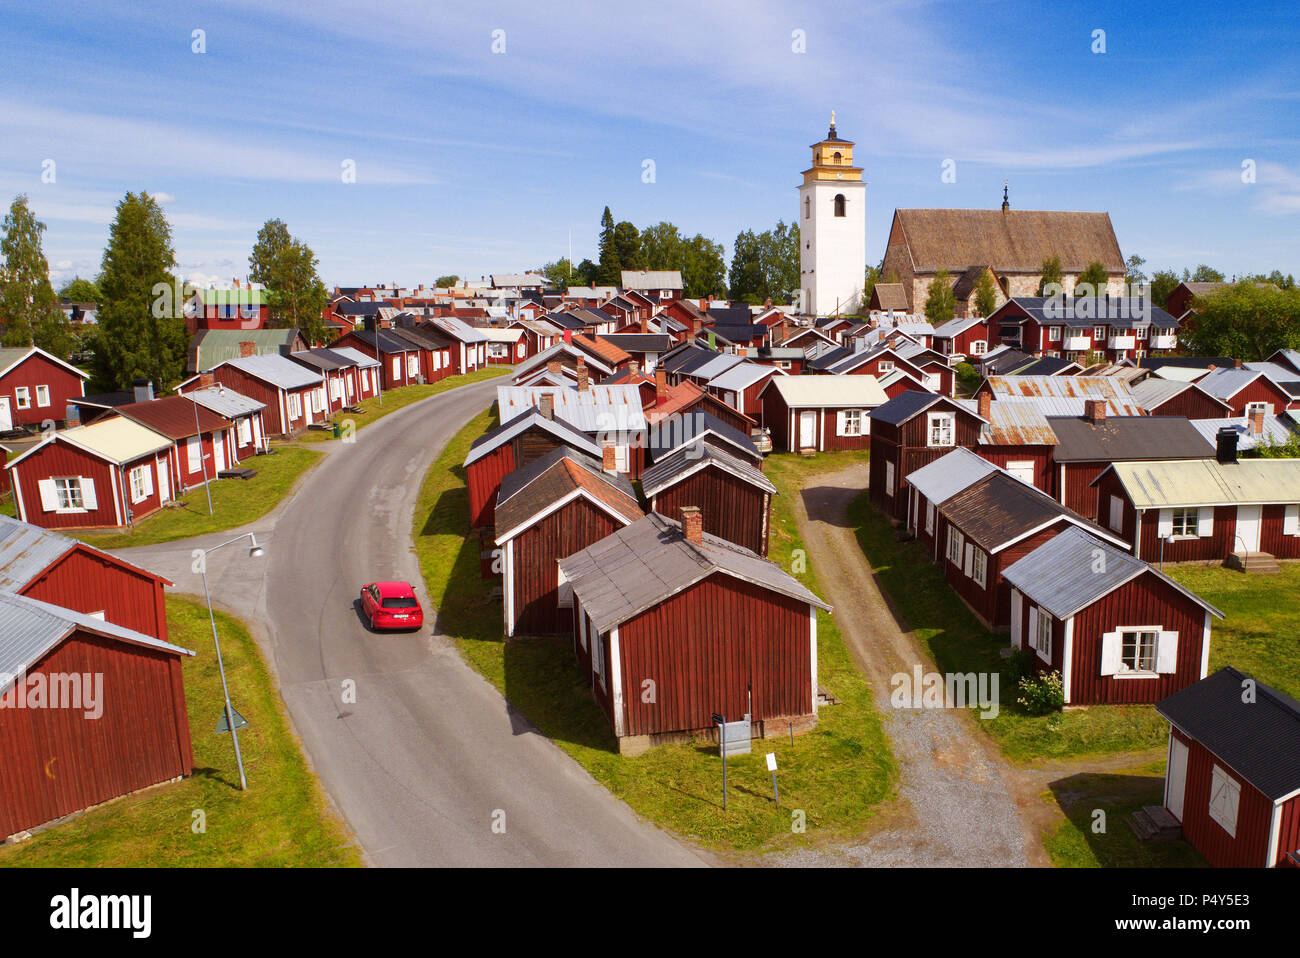 Gammelstad, Svezia - 16 Giugno 2018: Veduta aerea della chiesa di Gammelstad città che è un sito patrimonio mondiale dell'UNESCO situato 10 km ad ovest di Lulea. Foto Stock